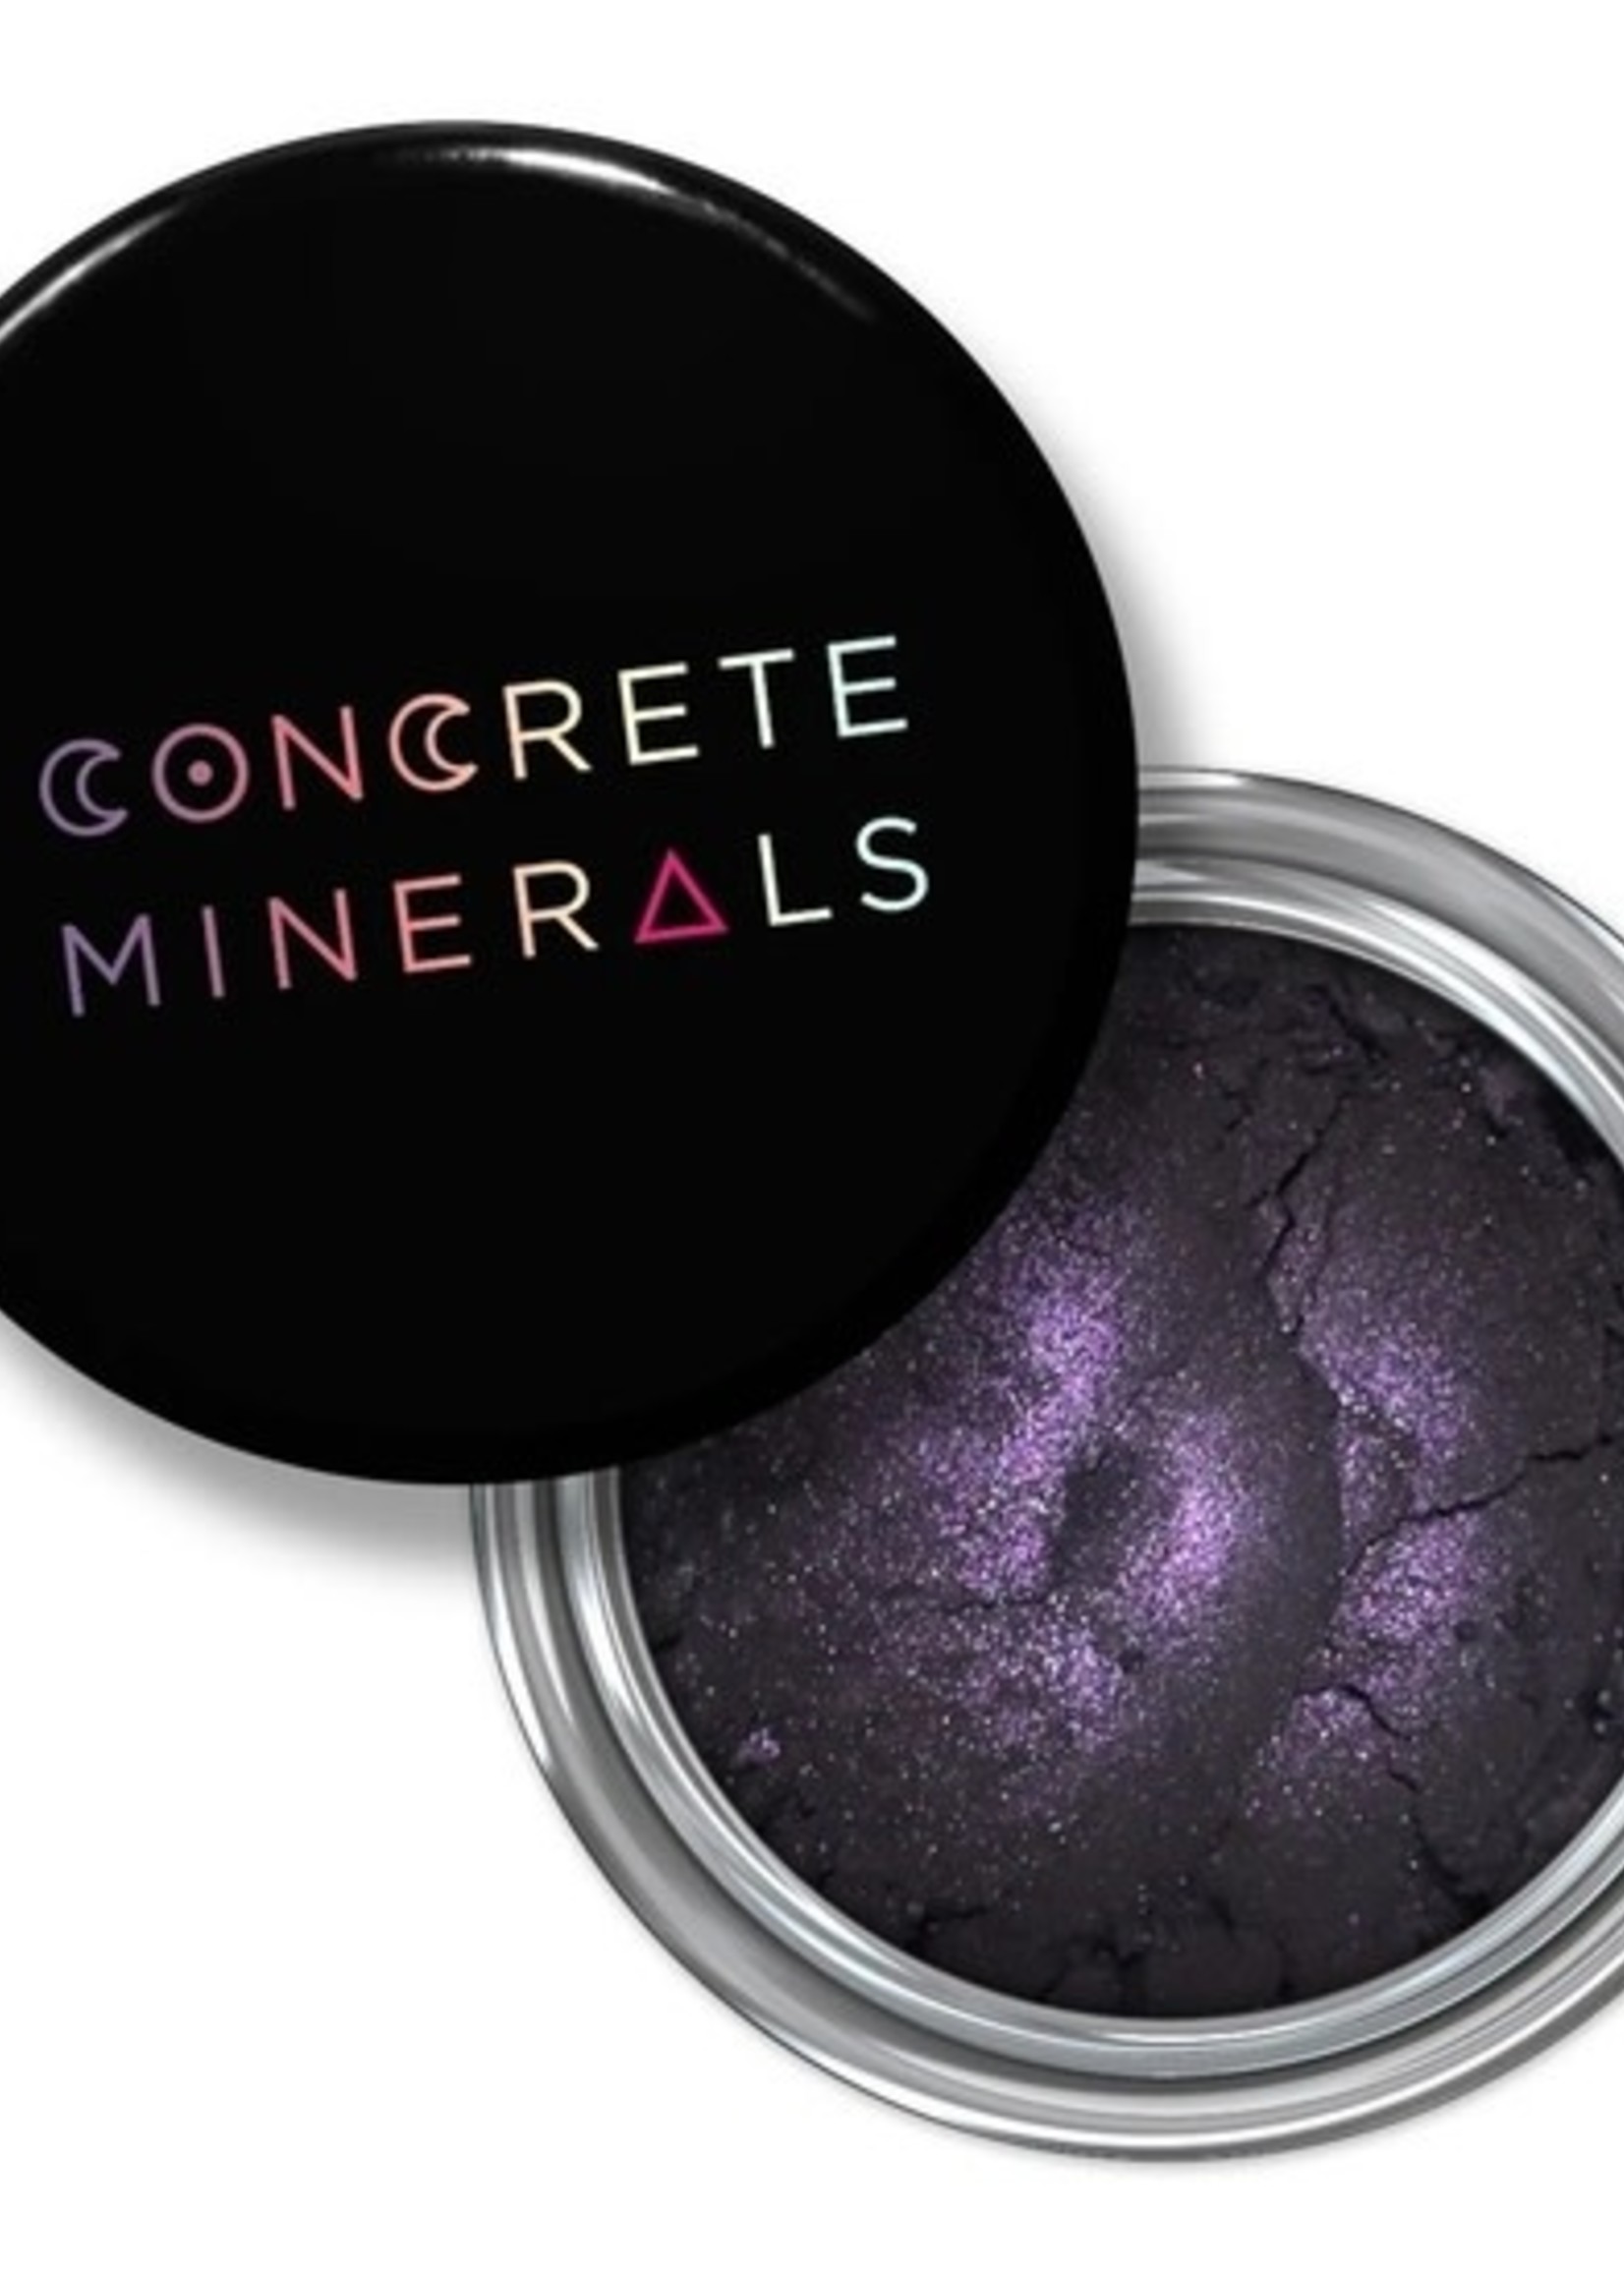 'Seance' Concrete Minerals Eyeshadow